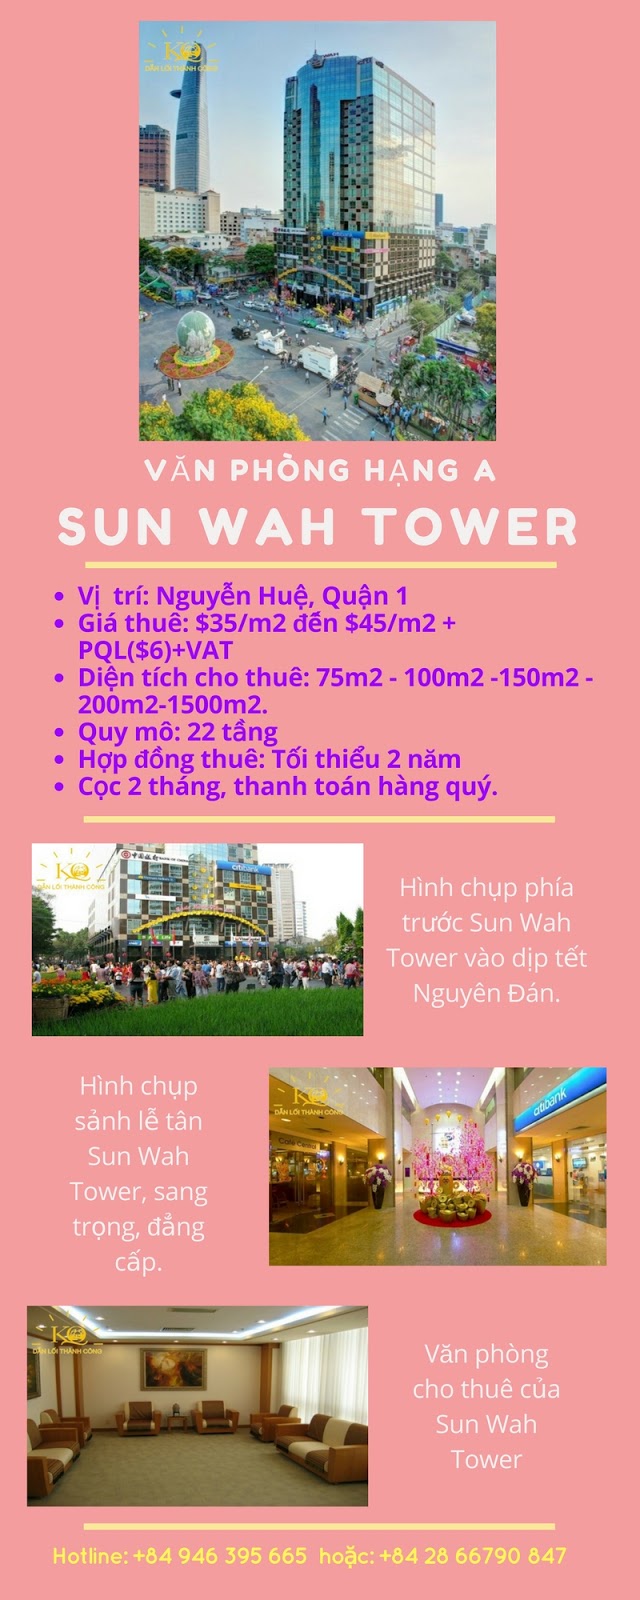 van phong hang a sun wah tower